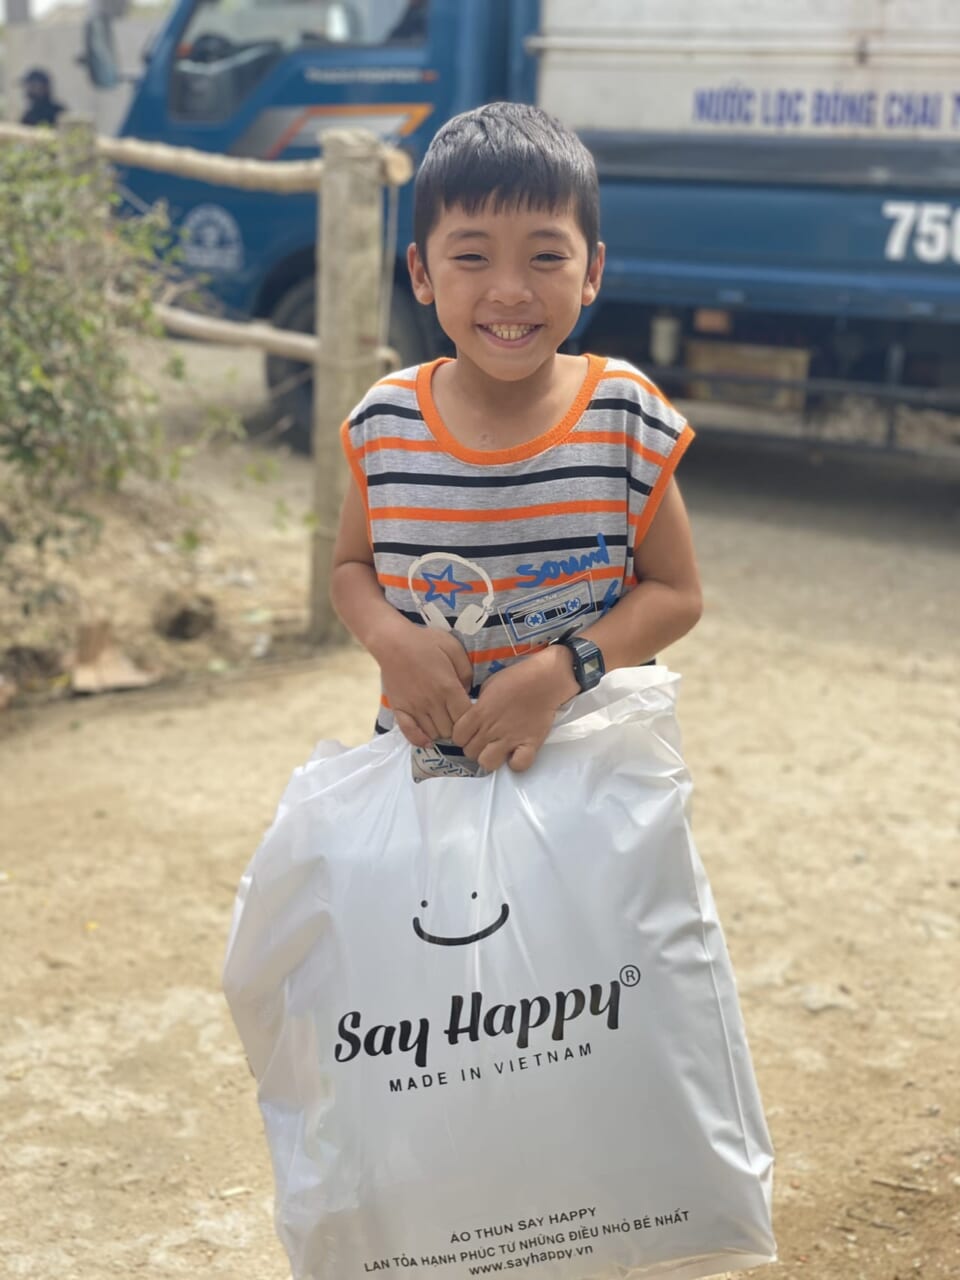 Đứa trẻ vui cười khi nhận quà cứu trợ Say Happy